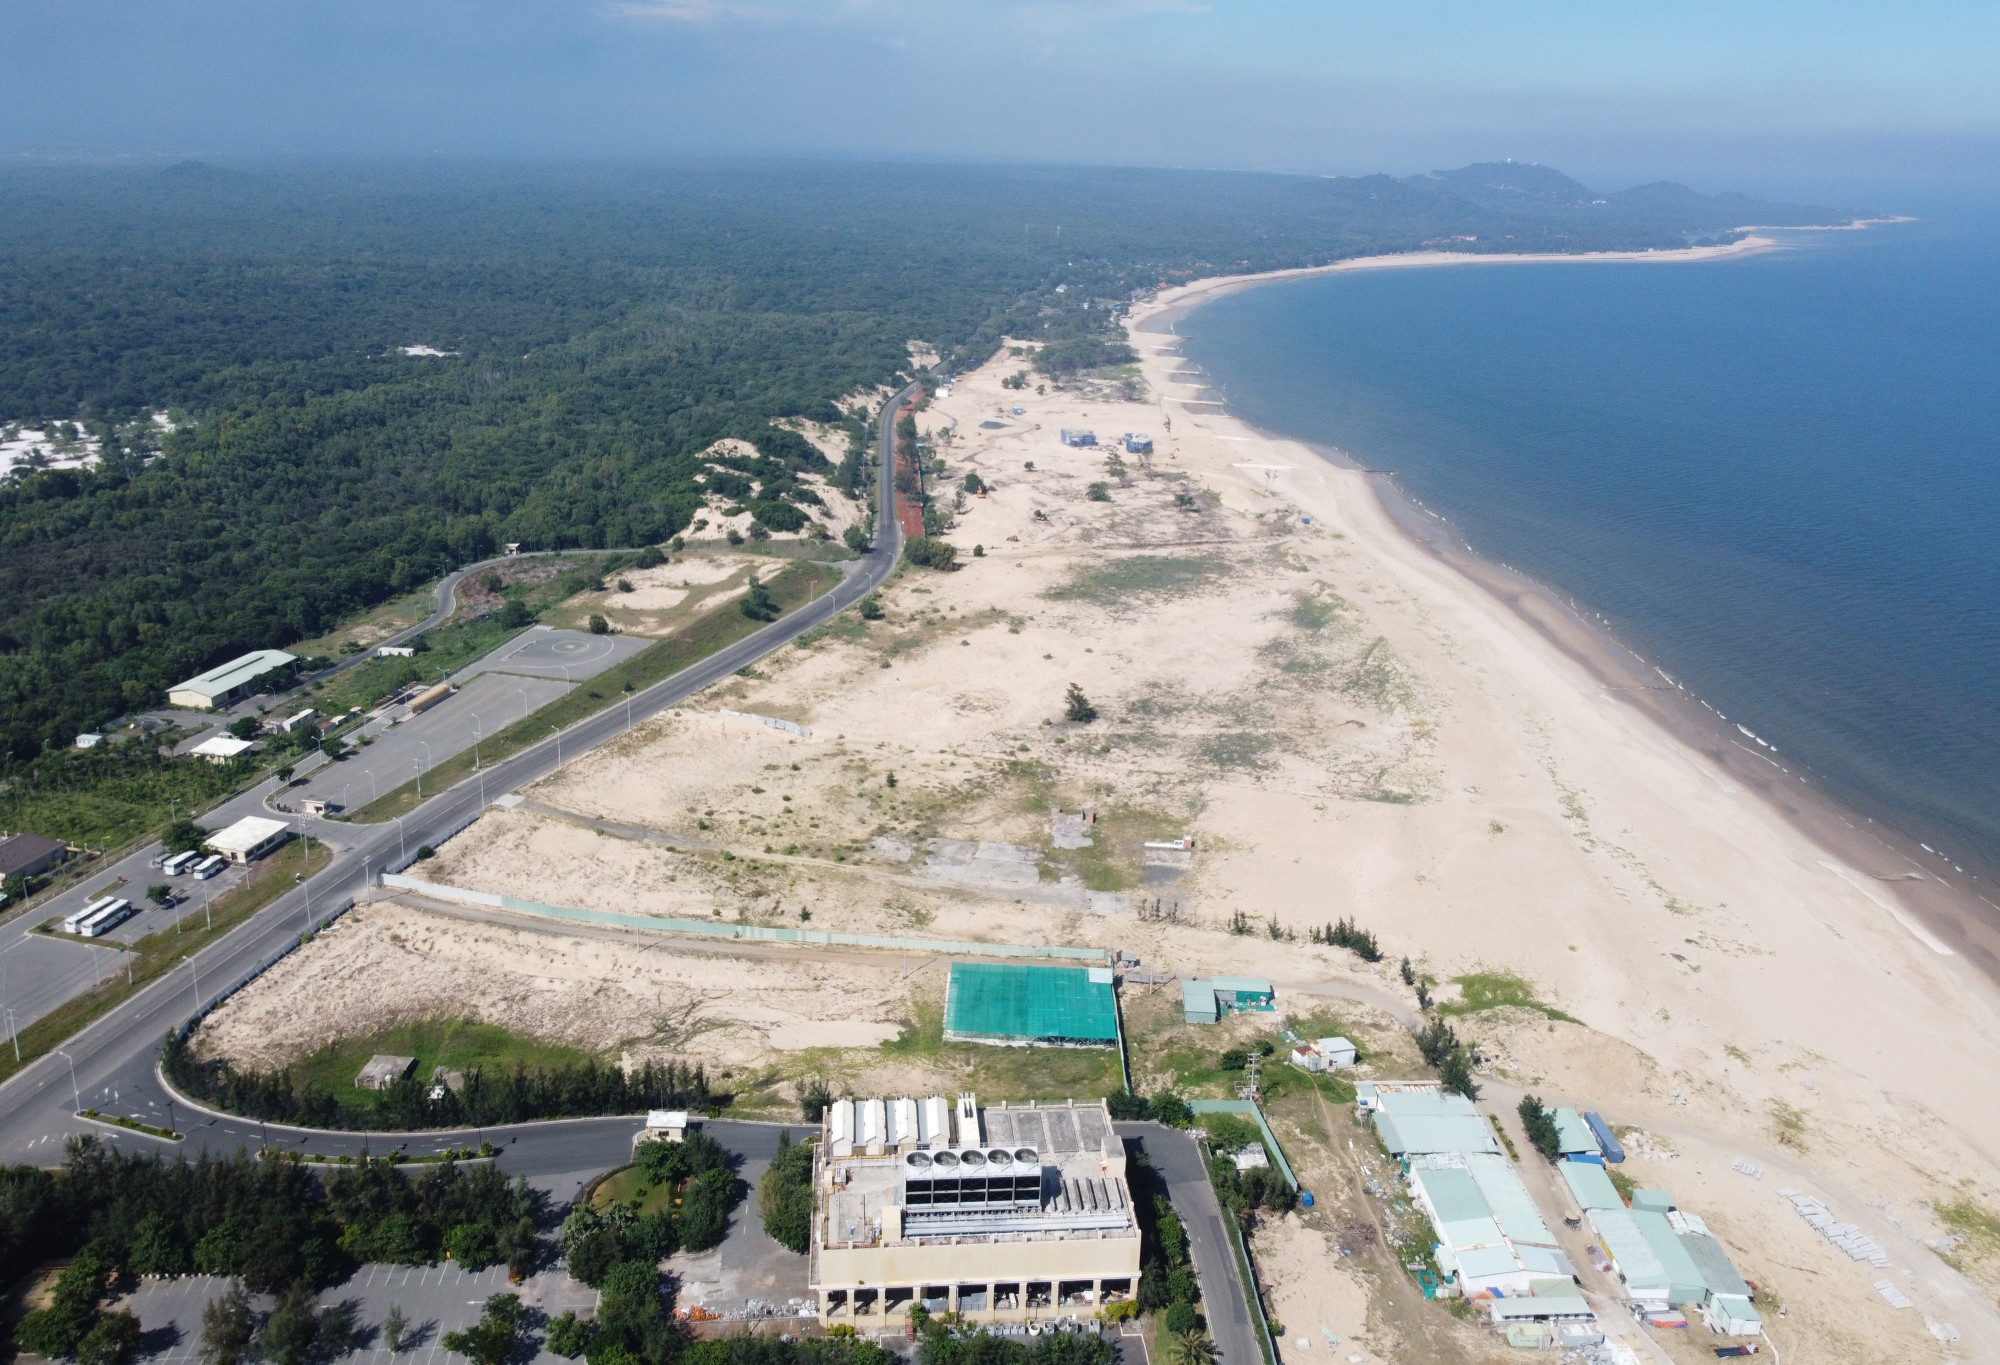 Cung đường ven biển Hồ Tràm, huyện Xuyên Mộc là nơi tập trung hàng loạt dự án du lịch cao cấp của tỉnh Bà Rịa - Vũng Tàu. Ảnh: Nhật Nguyên.